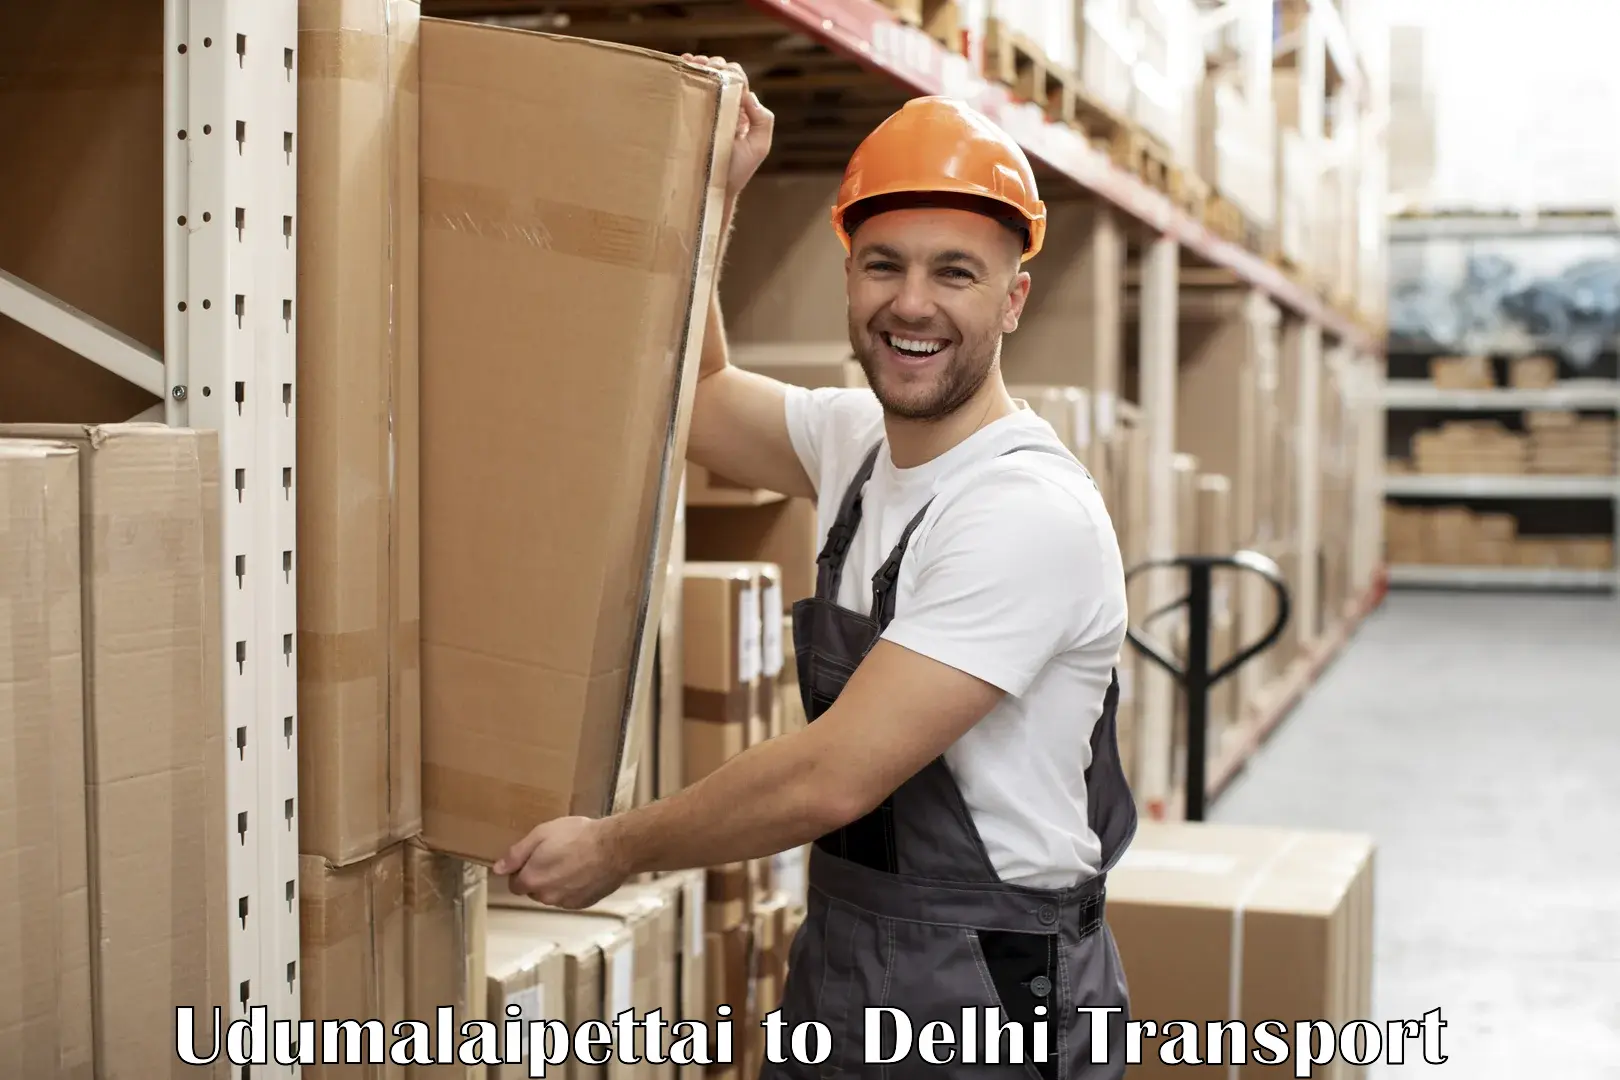 Delivery service Udumalaipettai to East Delhi